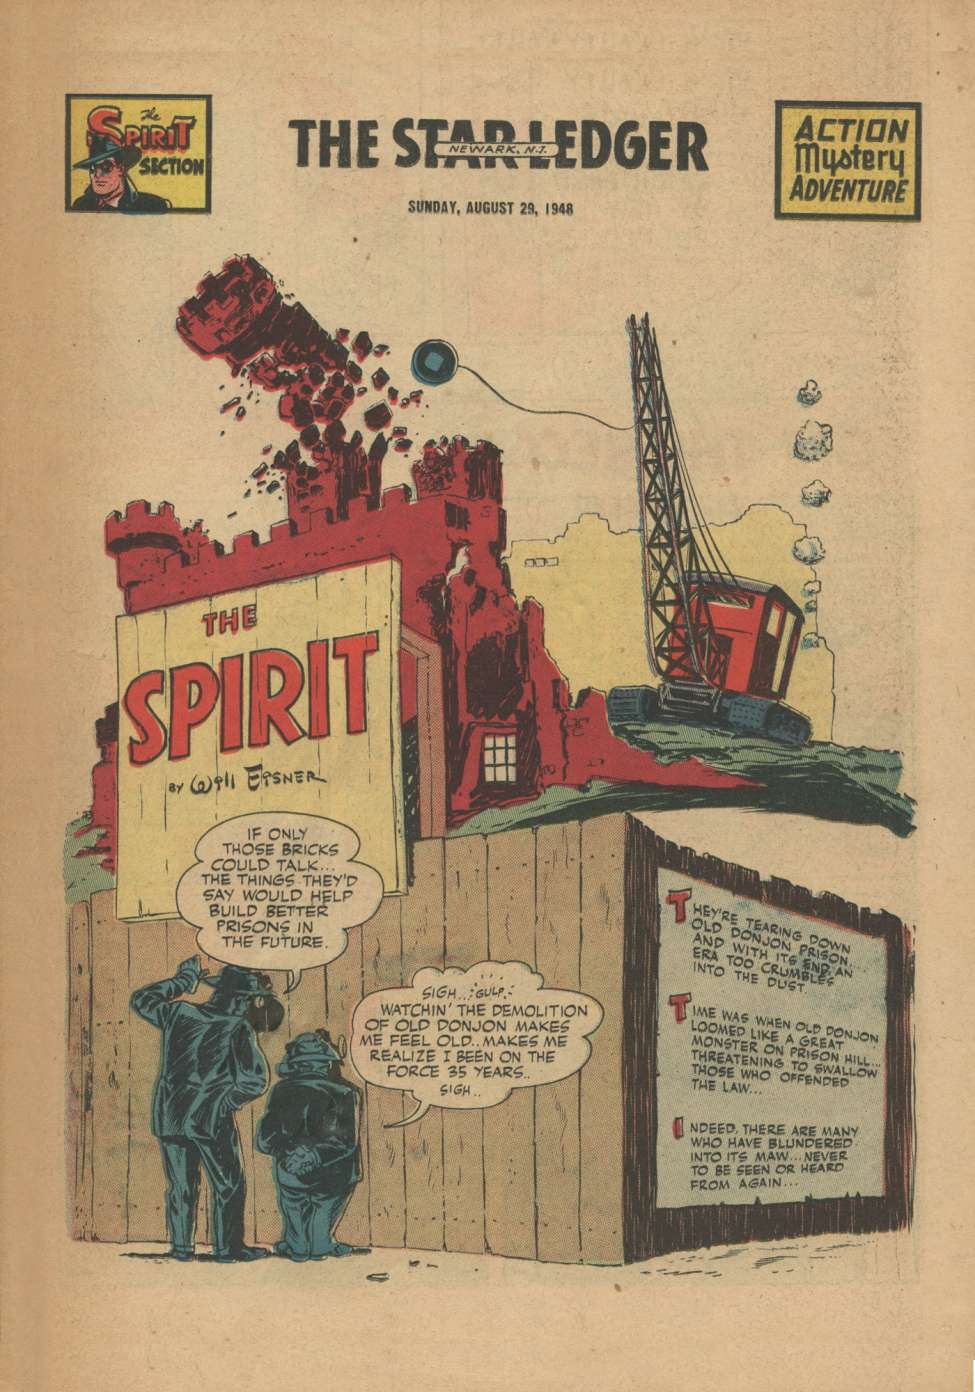 Comic Book Cover For The Spirit (1948-08-29) - Star-Ledger